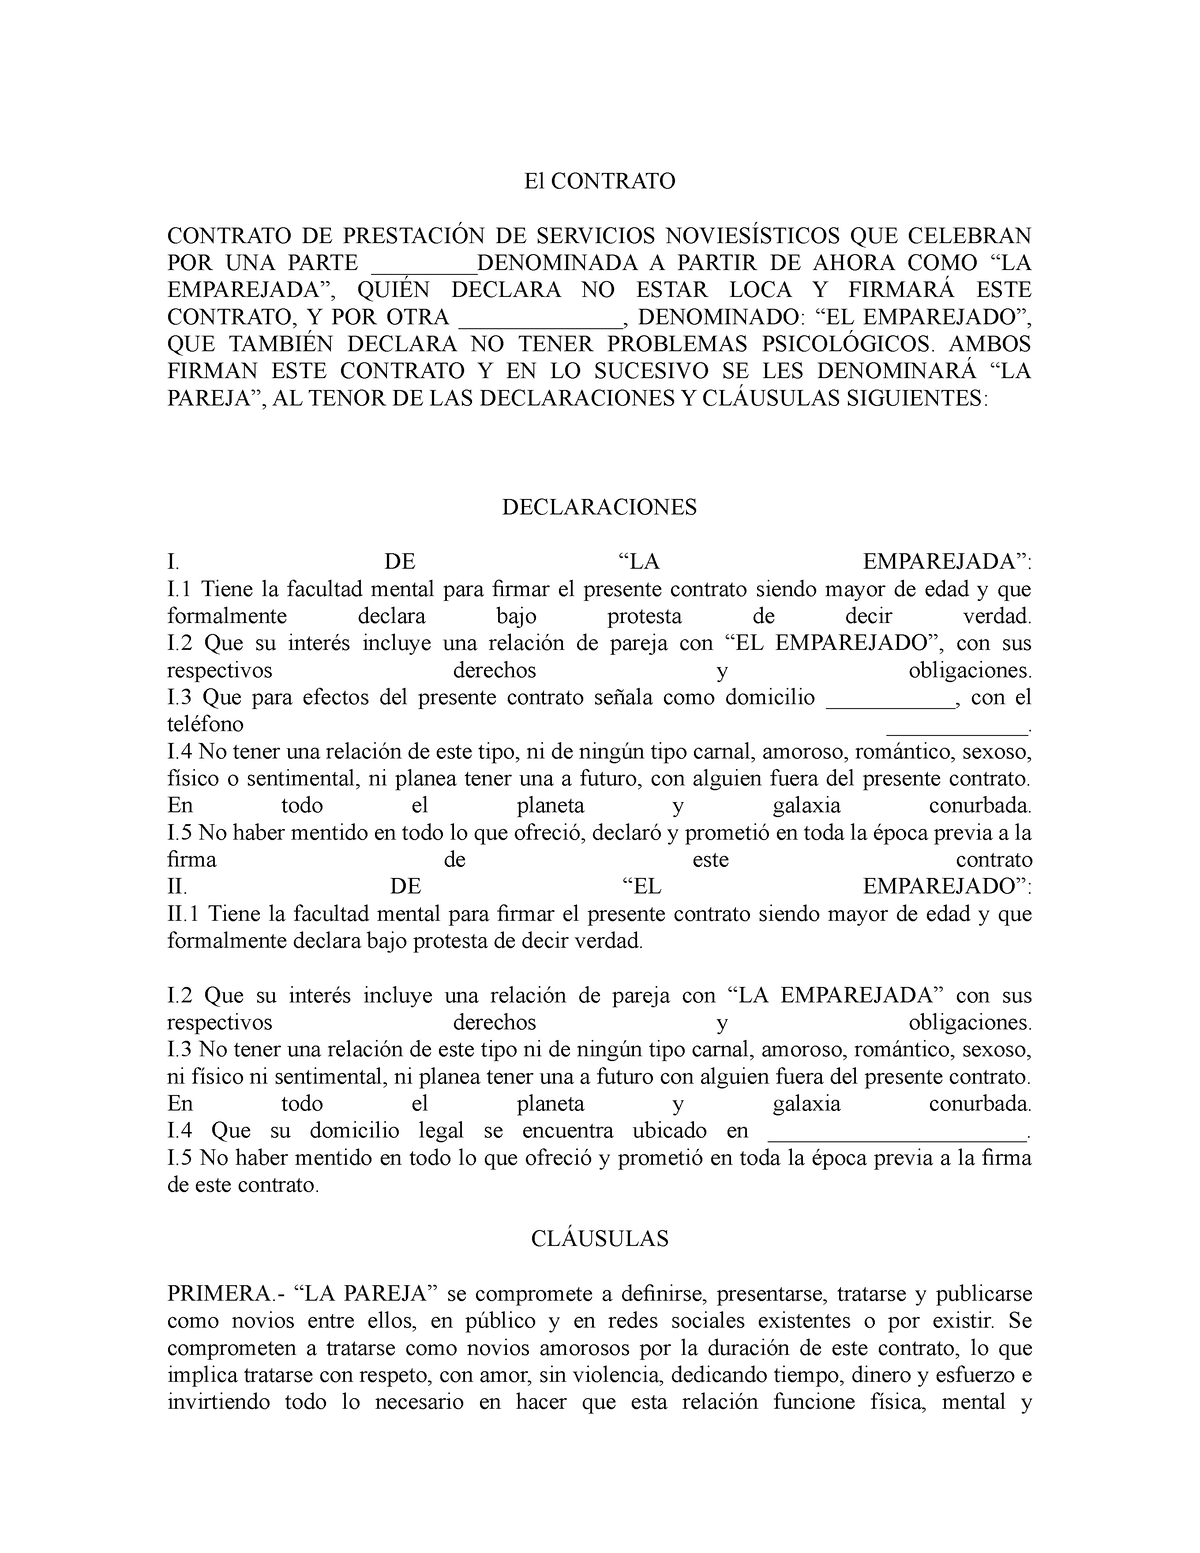 El Contrato Sem 2 Tit 4 El Contrato Contrato De PrestaciÓn De Servicios NoviesÍsticos Que 1209